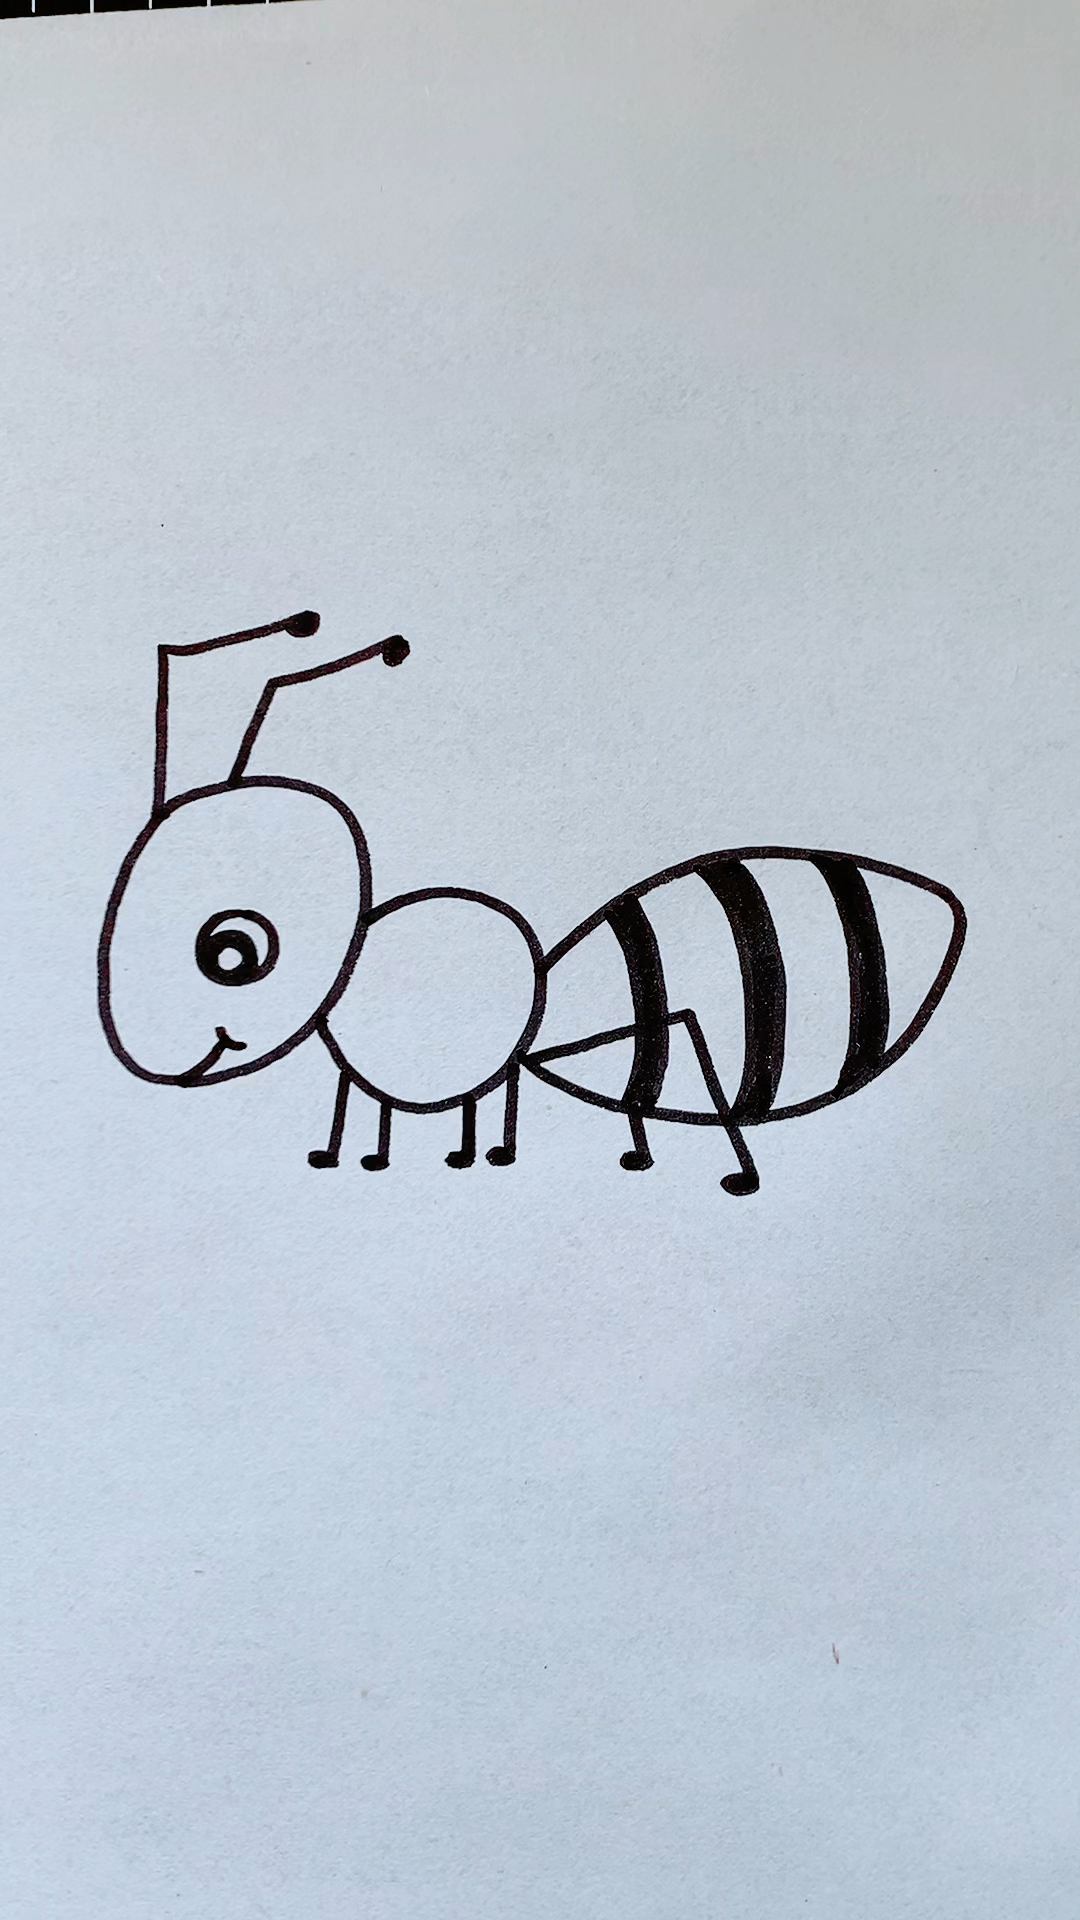 小蚂蚁的简笔画 简单图片